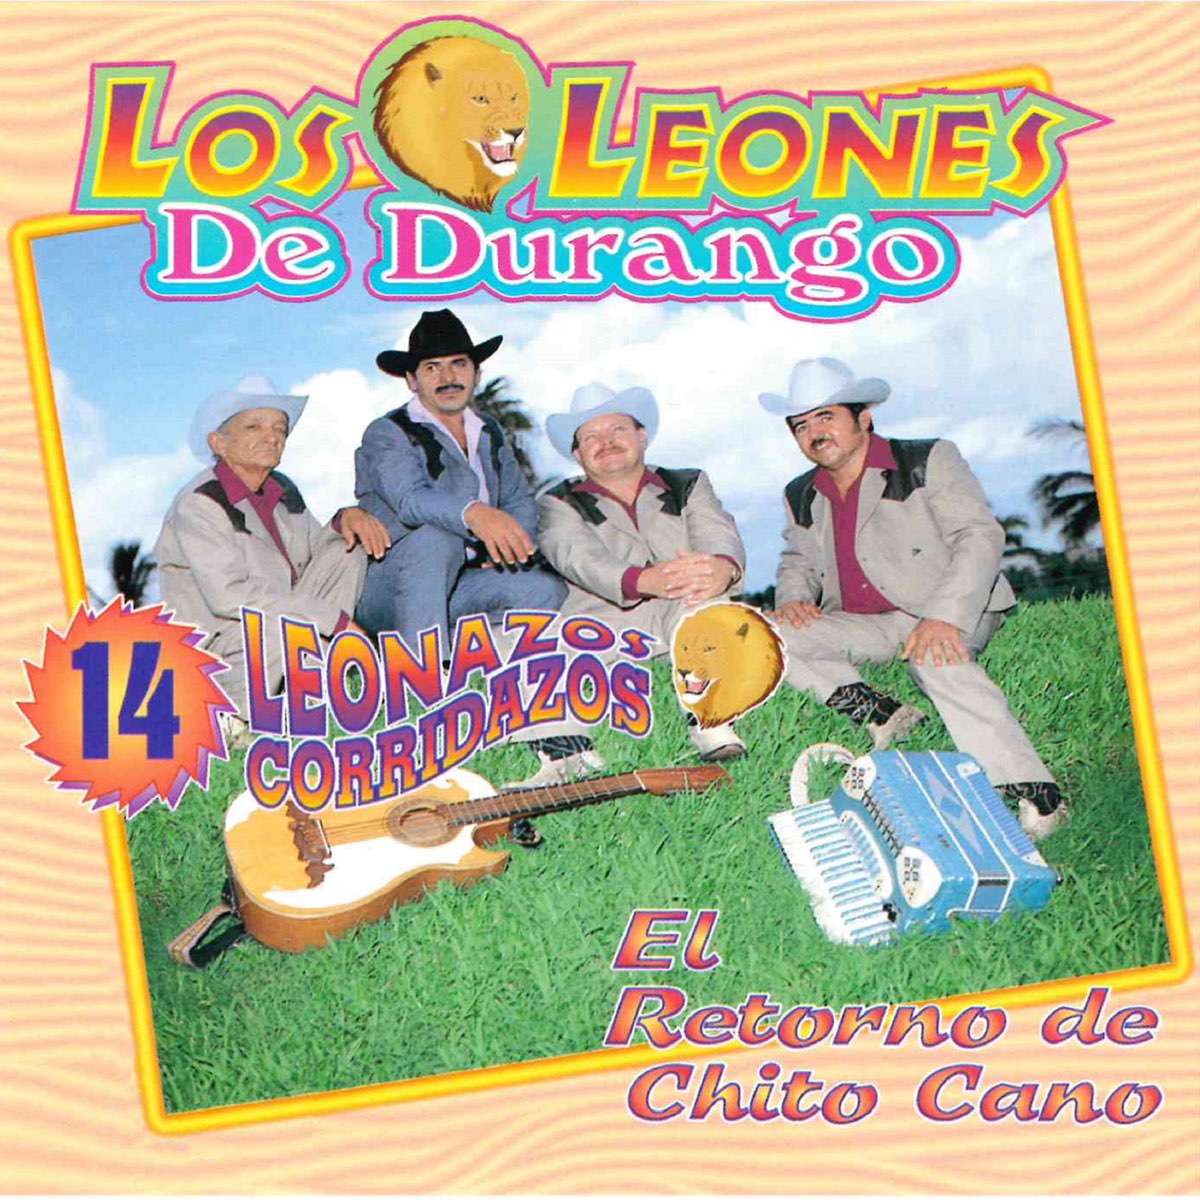 14 Leonazos Corridazos de Los Leones de Durango en Apple Music